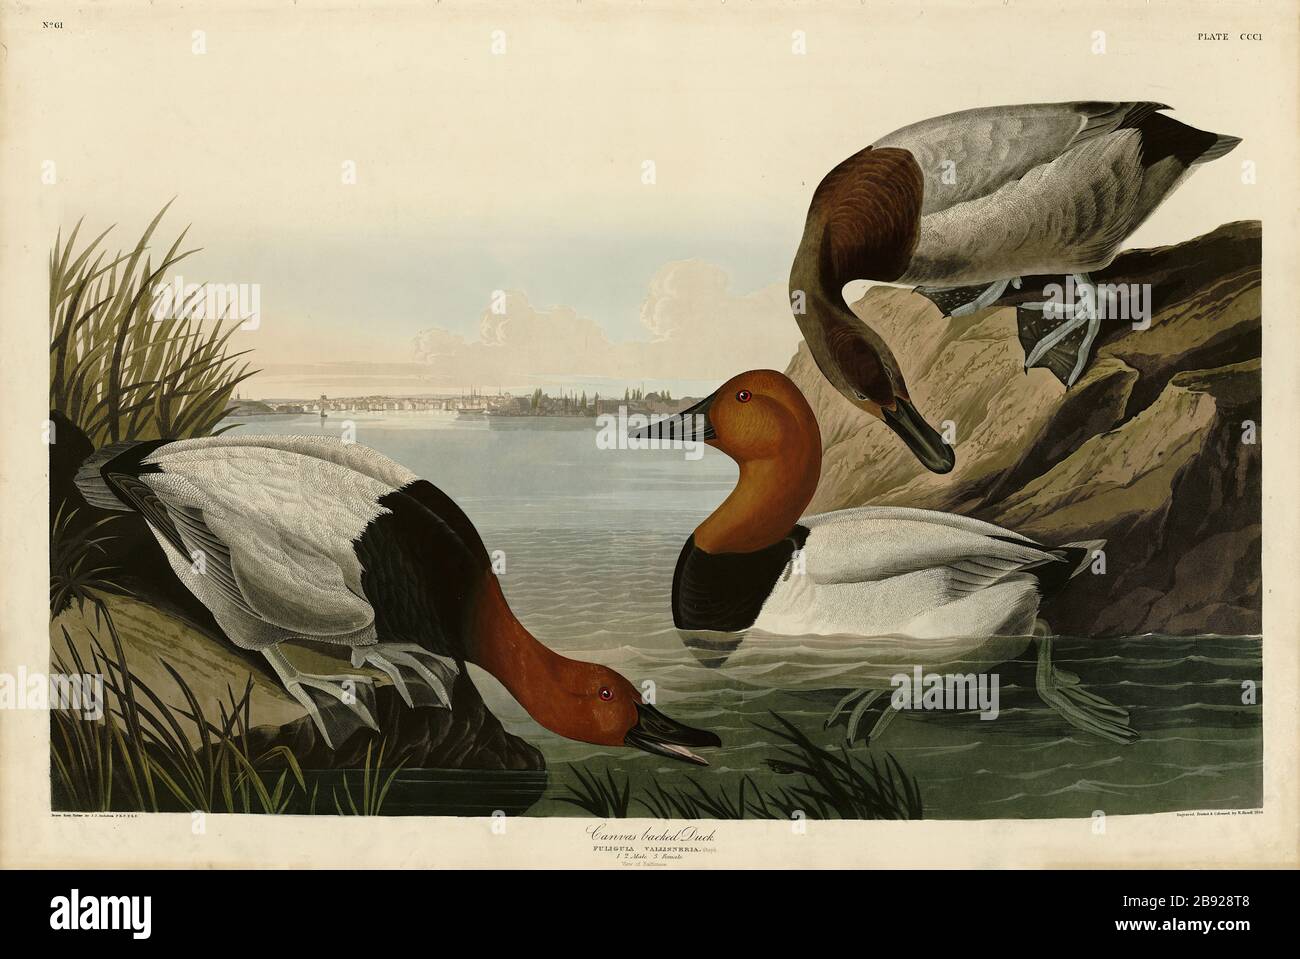 Plaque 301 Canvasback (Canvasback) le folio Birds of America (1827–1839) de John James Audubon - image éditée de très haute résolution et de qualité Banque D'Images